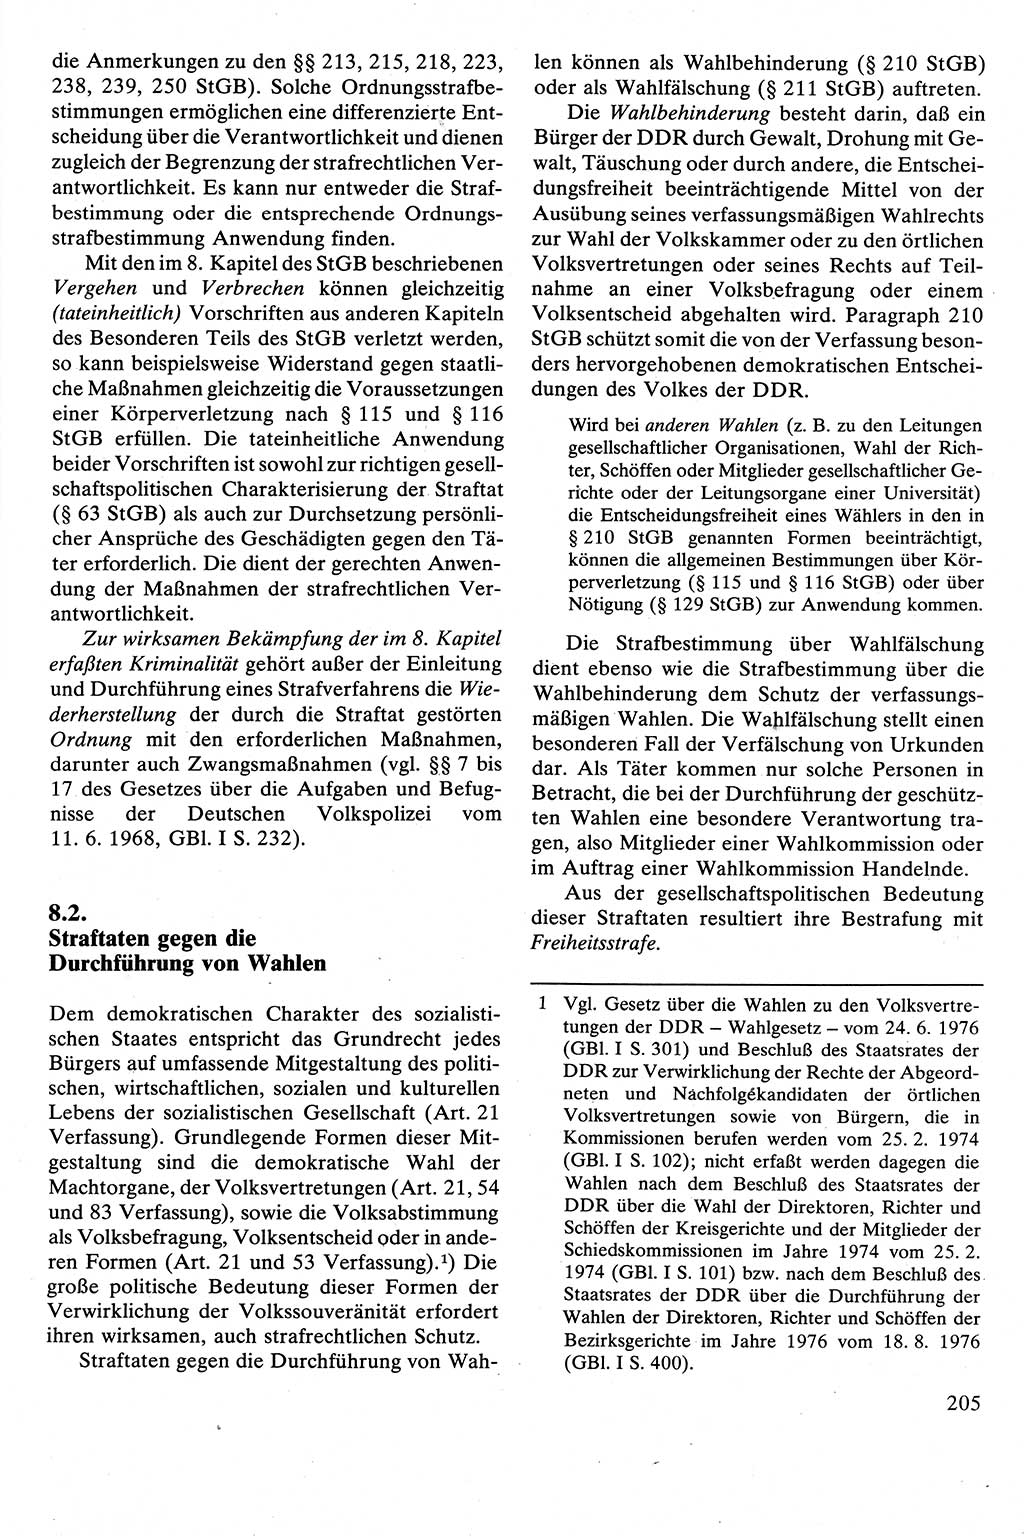 Strafrecht [Deutsche Demokratische Republik (DDR)], Besonderer Teil, Lehrbuch 1981, Seite 205 (Strafr. DDR BT Lb. 1981, S. 205)